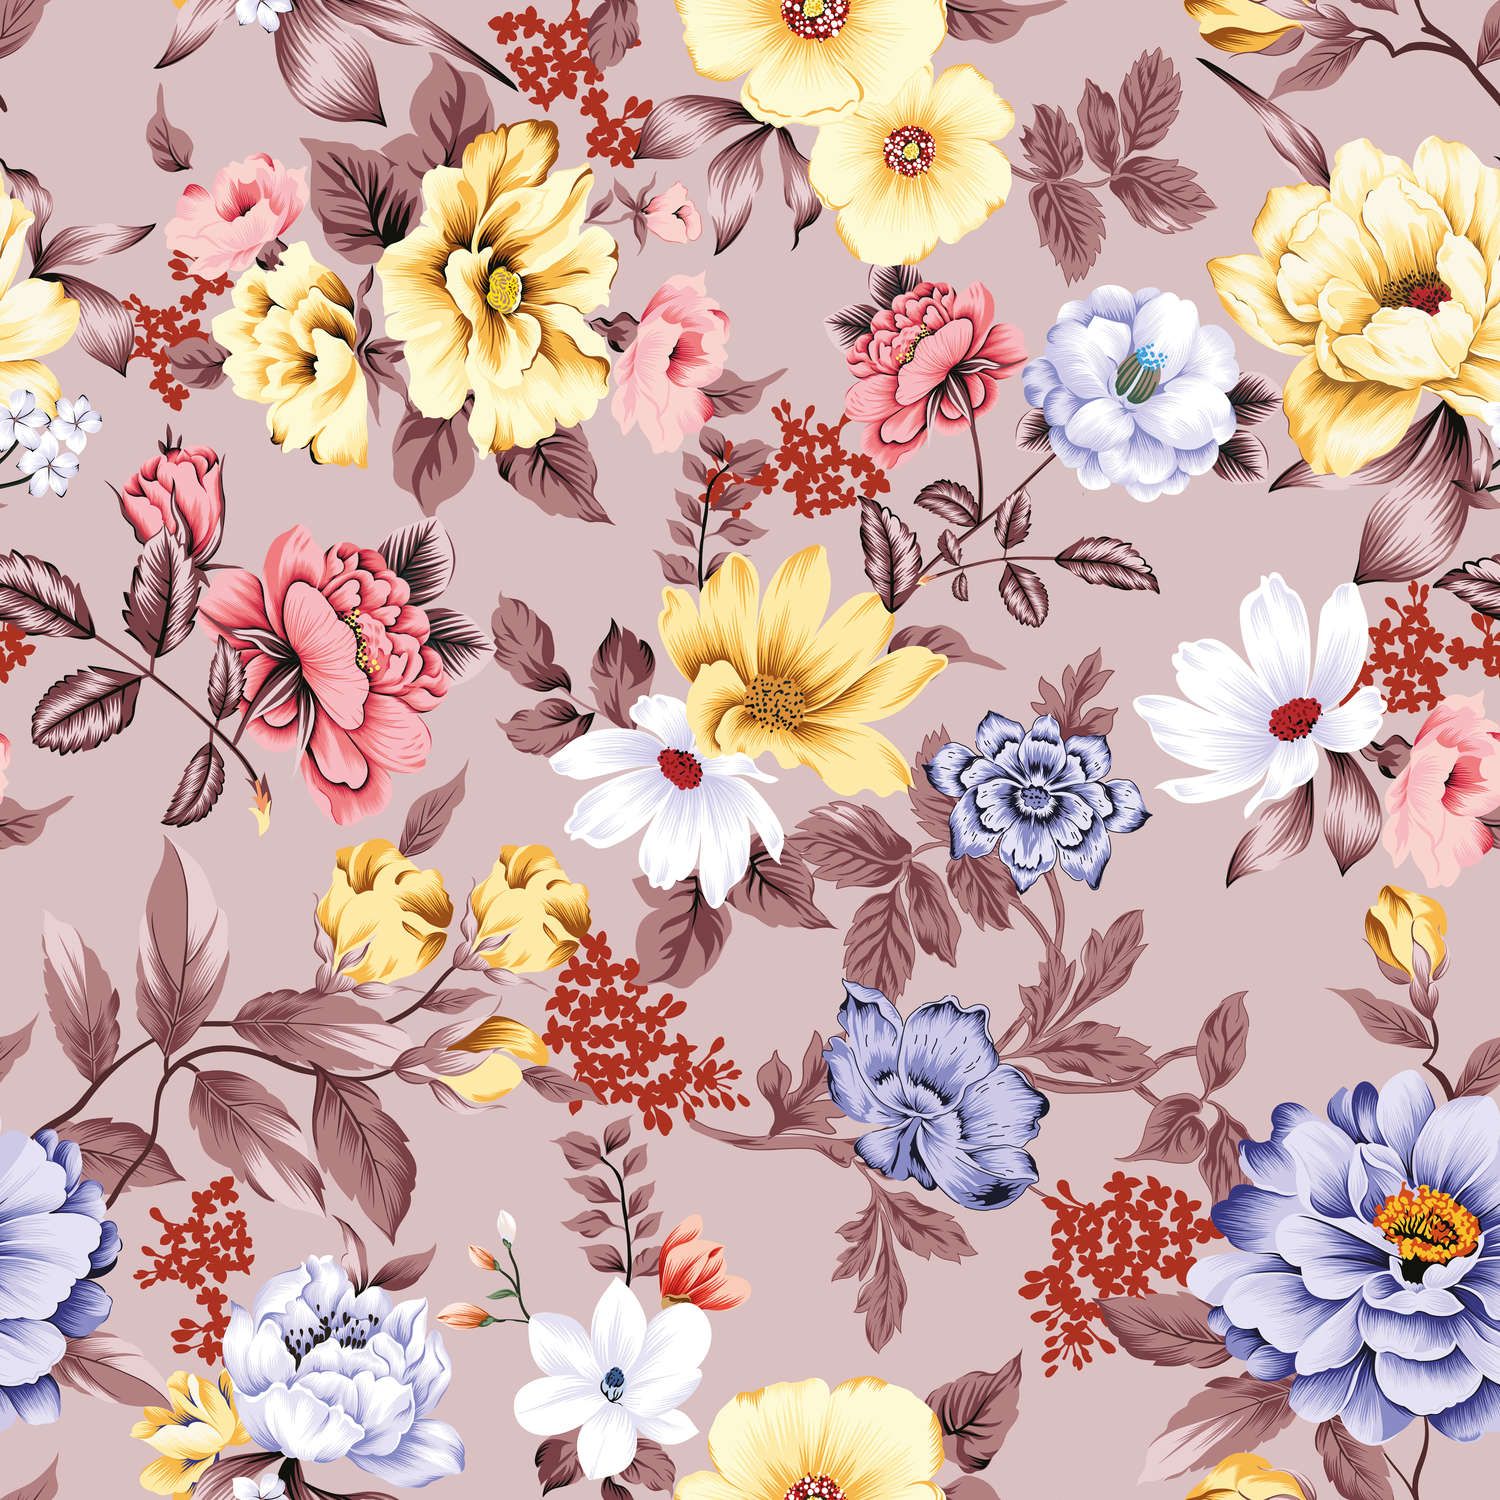             papiers peints à impression numérique floral avec fleurs et feuilles - intissé lisse & nacré
        